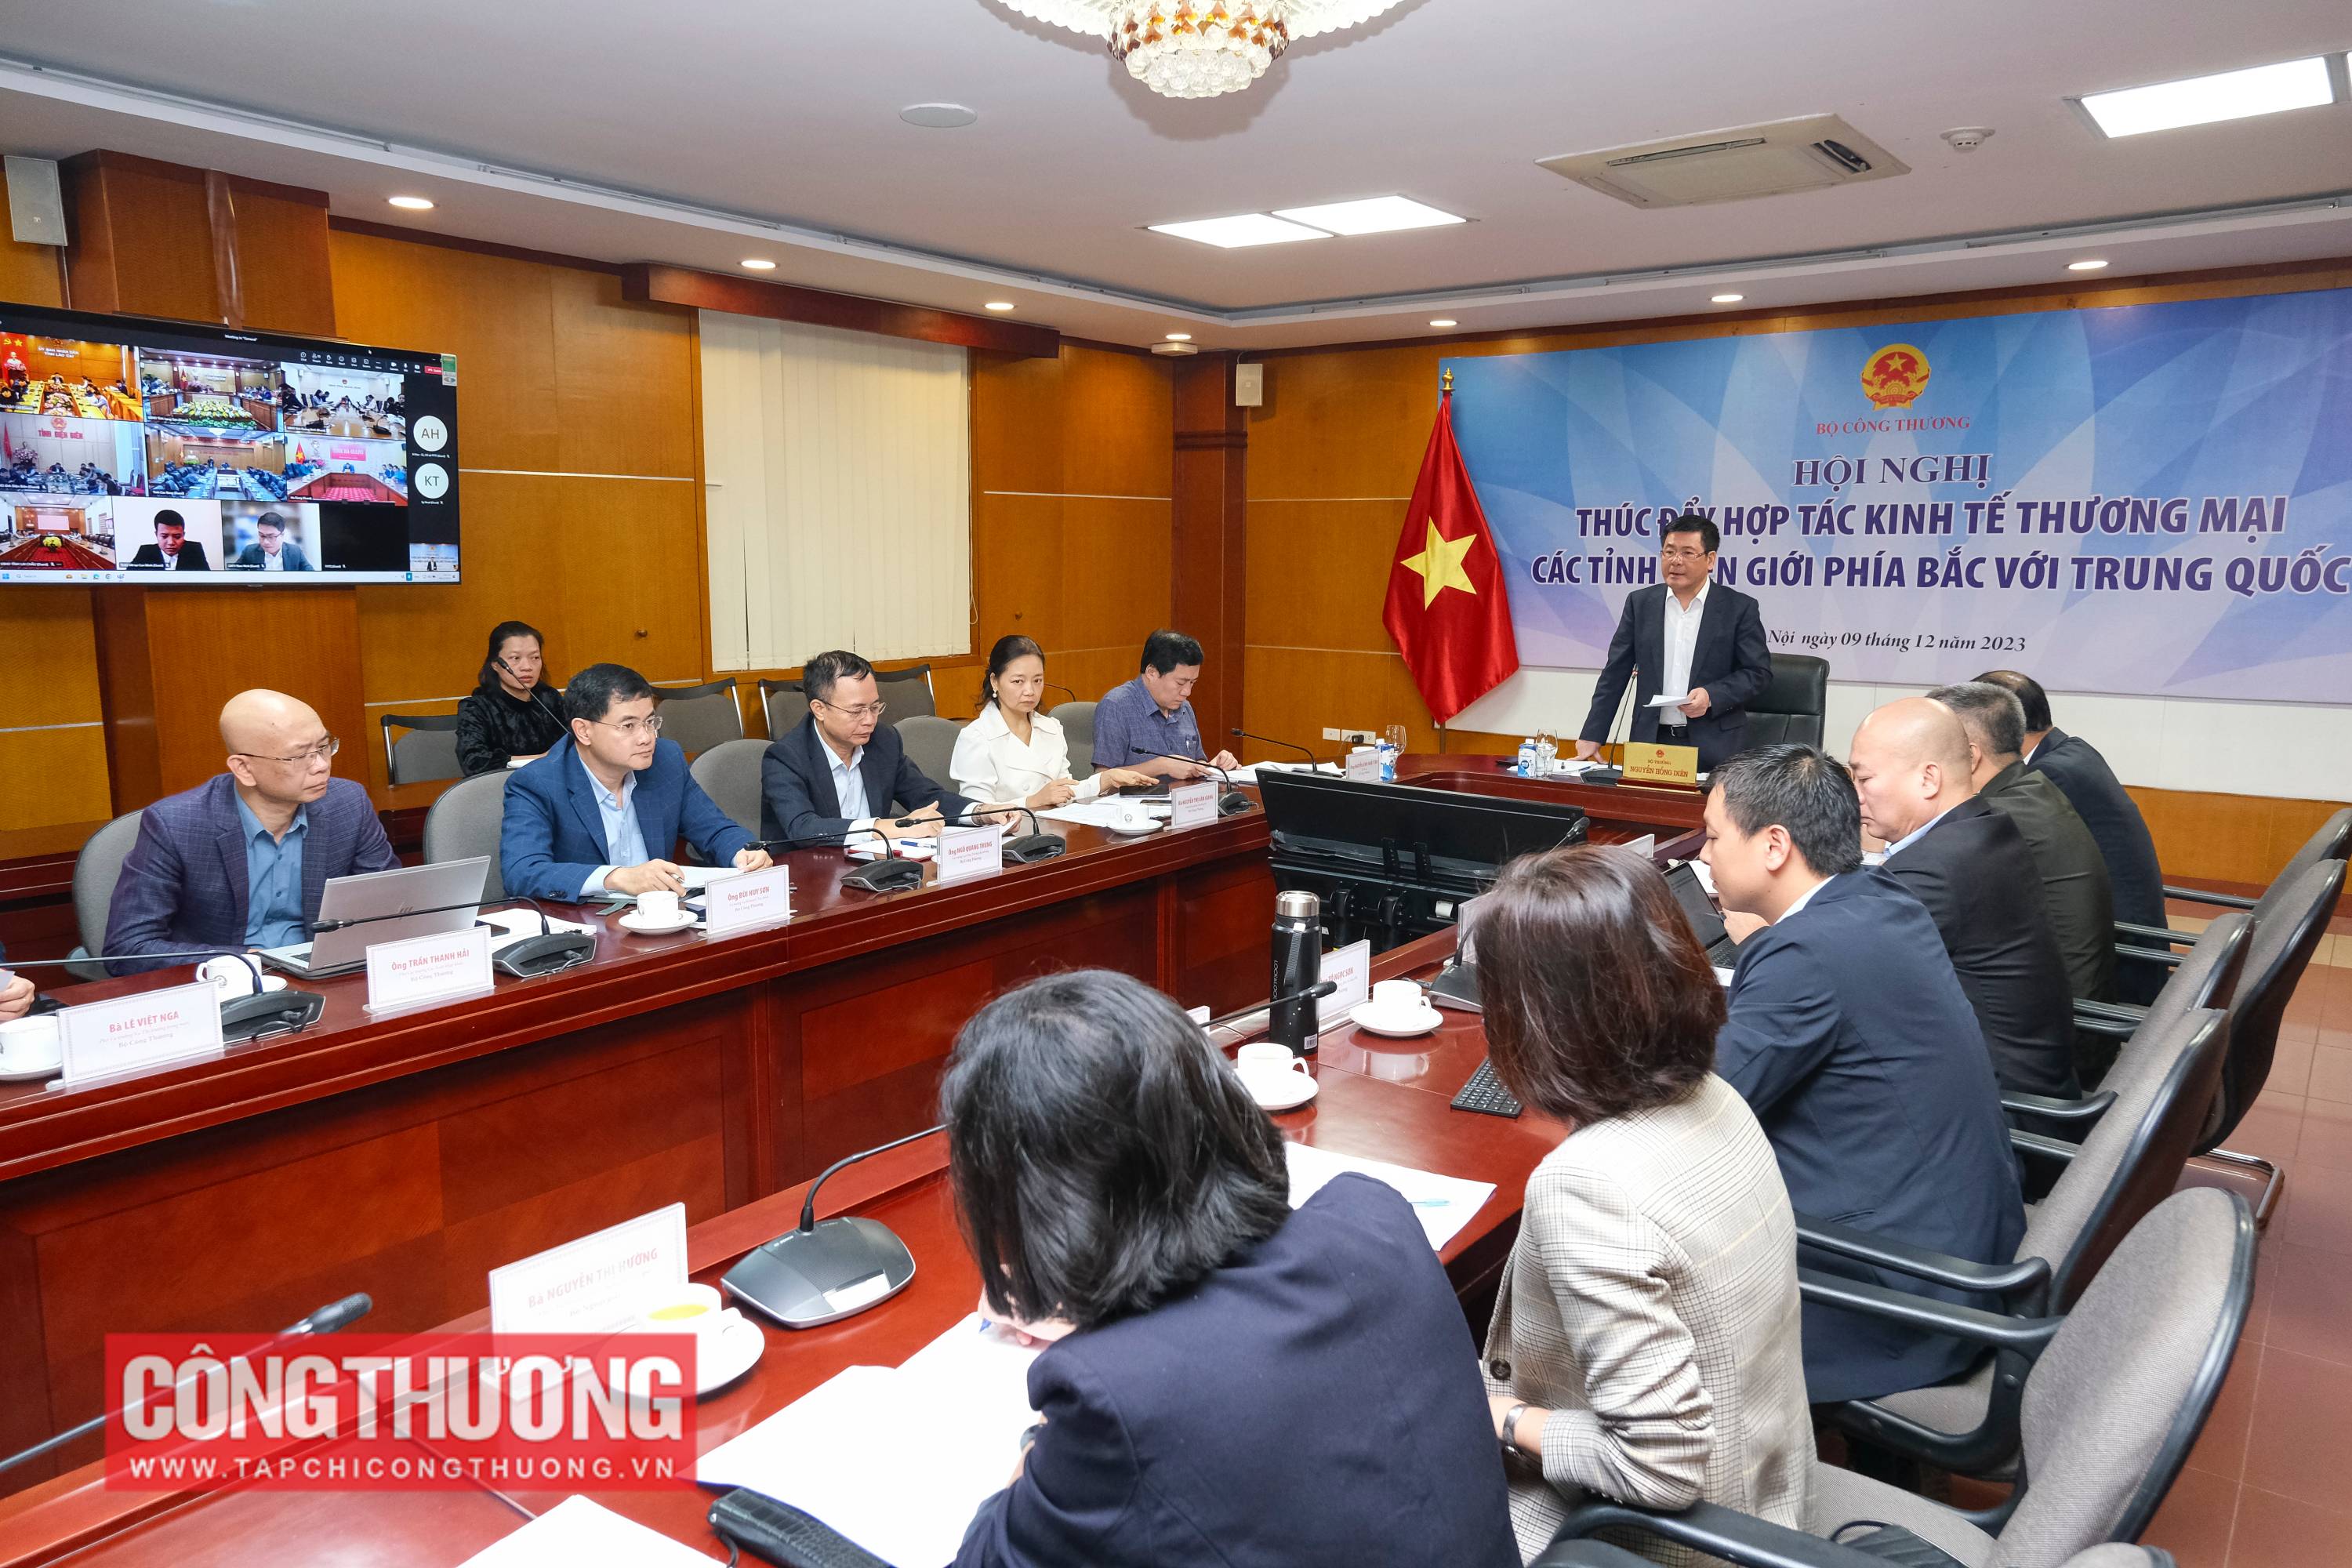 Bộ trưởng Bộ Công Thương Nguyễn Hồng Diên chủ trì Hội nghị Thúc đẩy hợp tác kinh tế thương mại các tỉnh biên giới phía Bắc với Trung Quốc